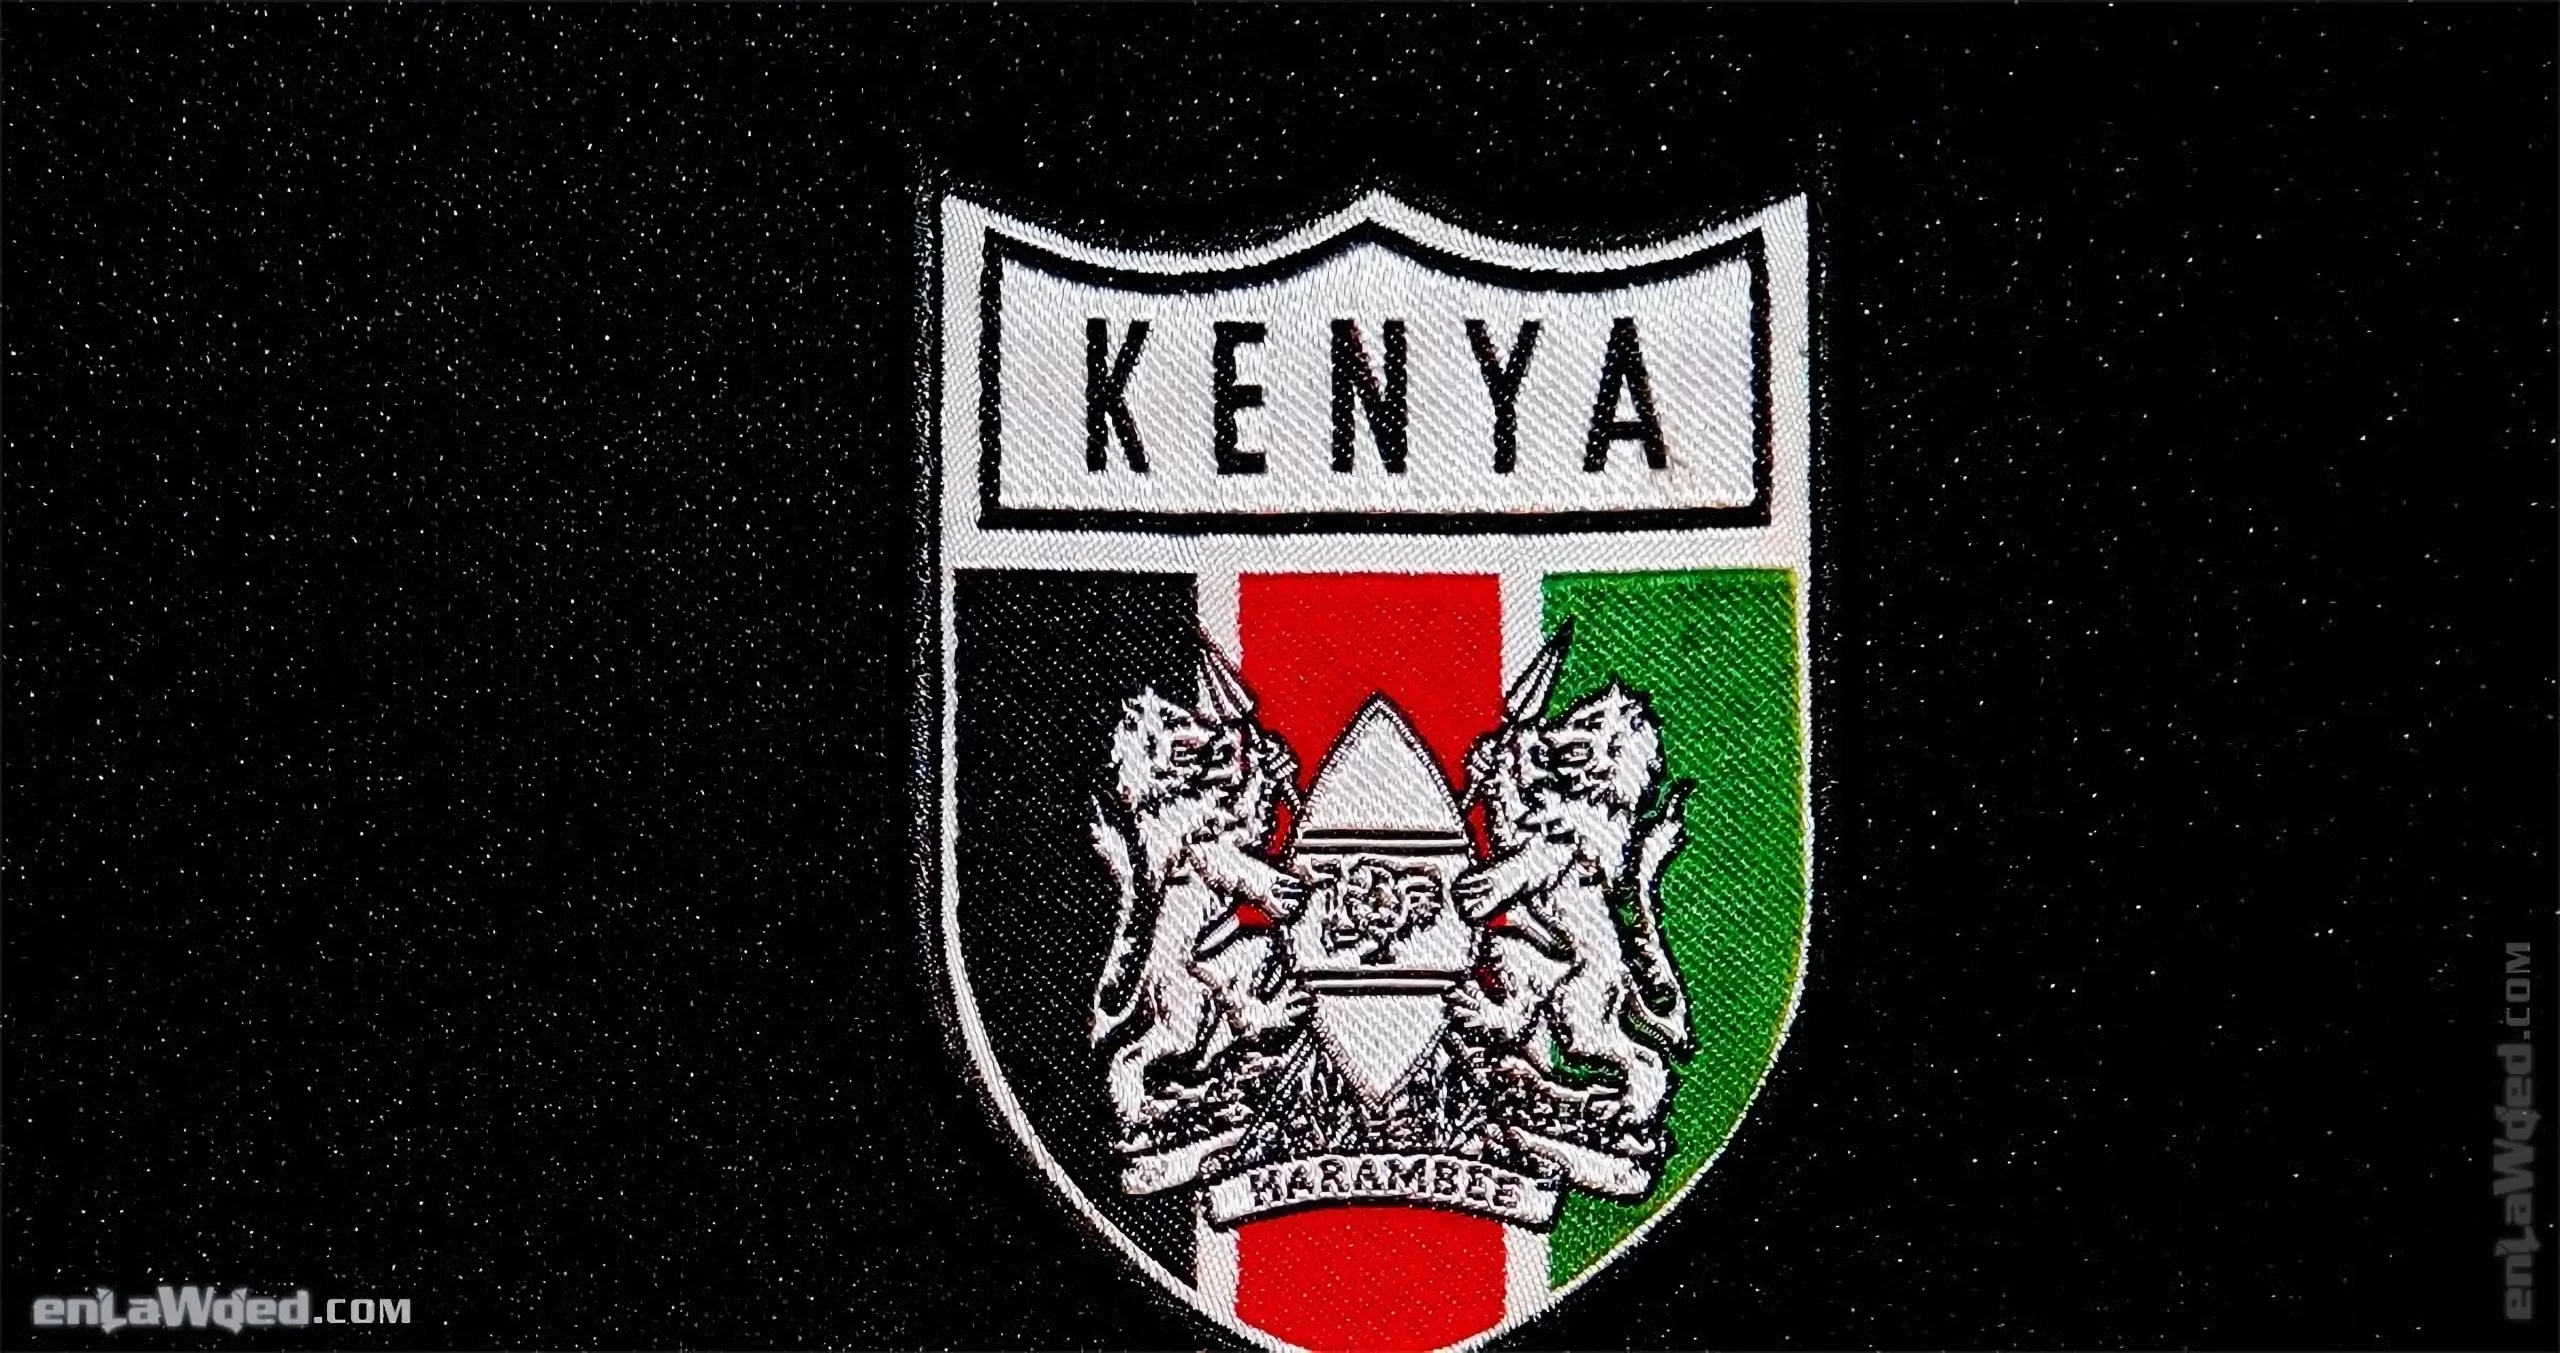 Men’s 2007 Kenya Harambee TT by Adidas Originals: Breakthrough (EnLawded.com file #lmcgjwh0g56cgg1ftr)